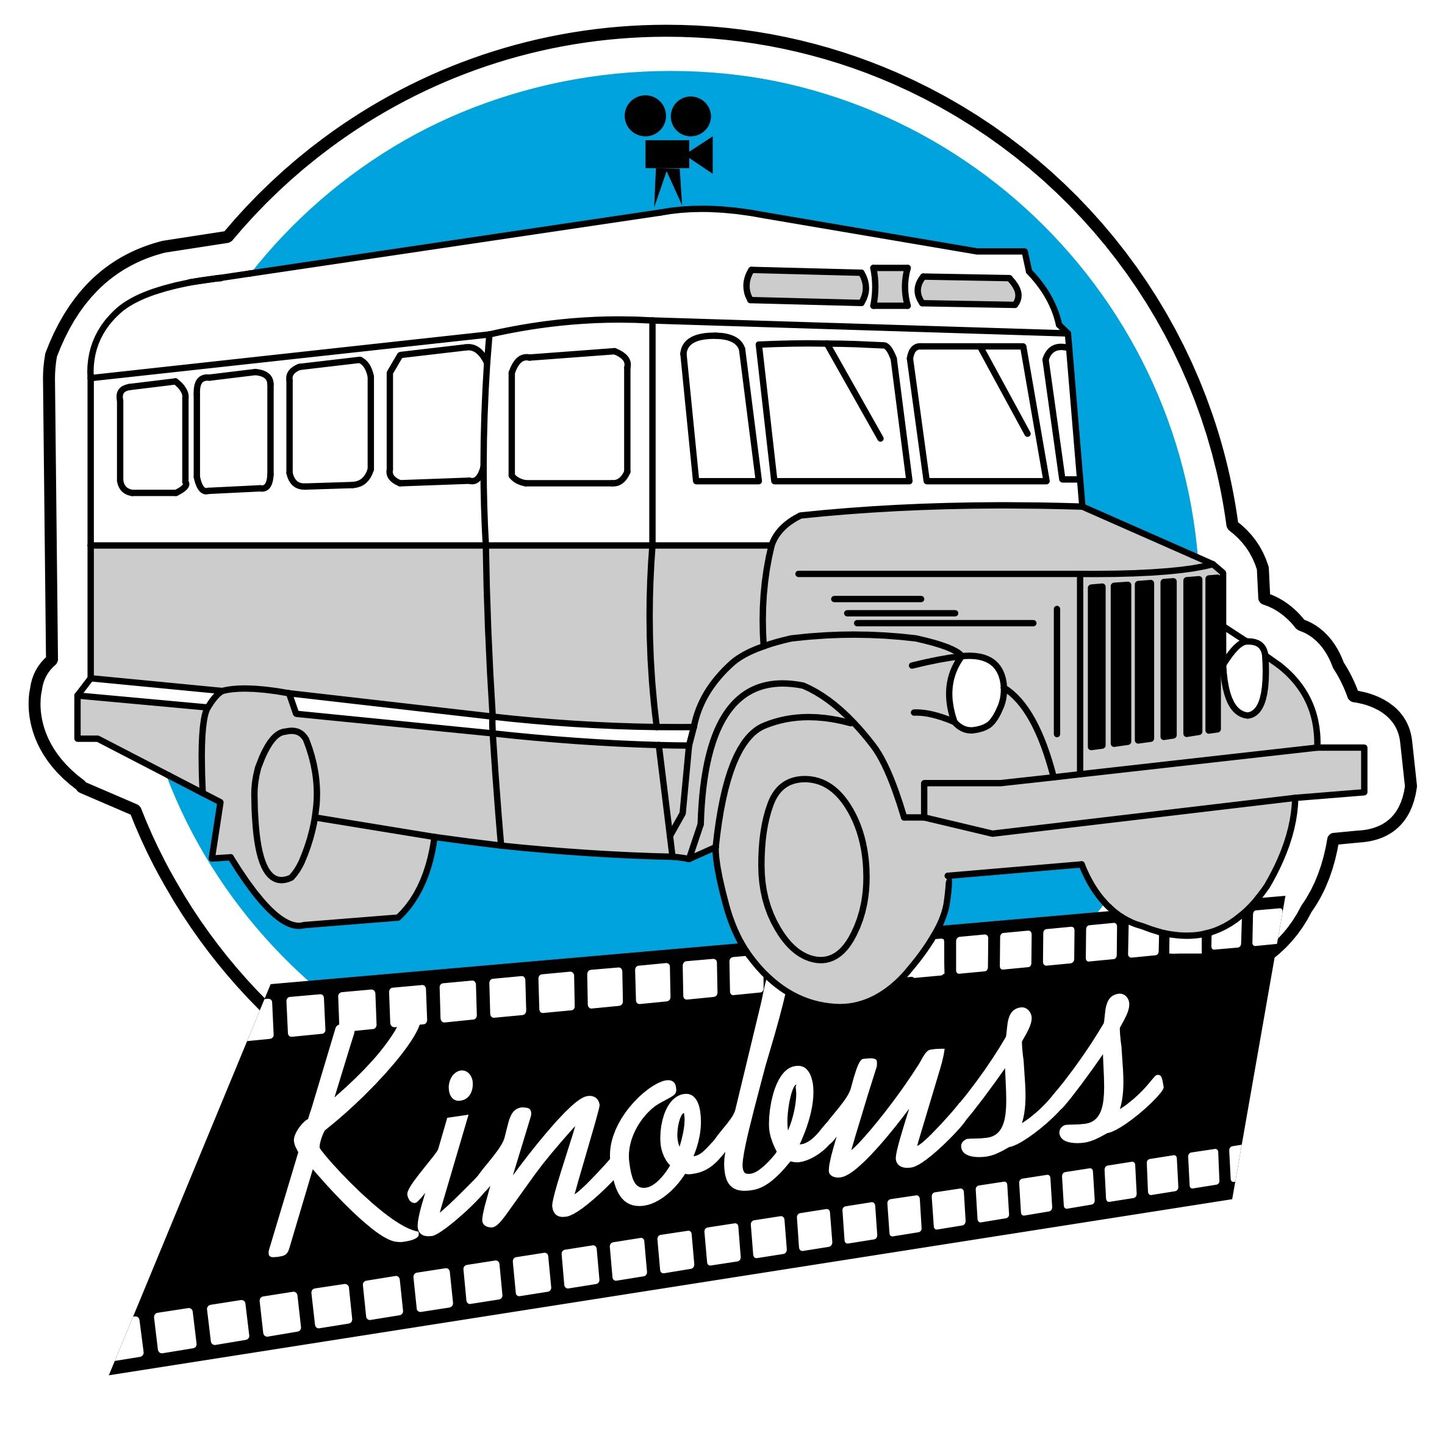 Kinobuss